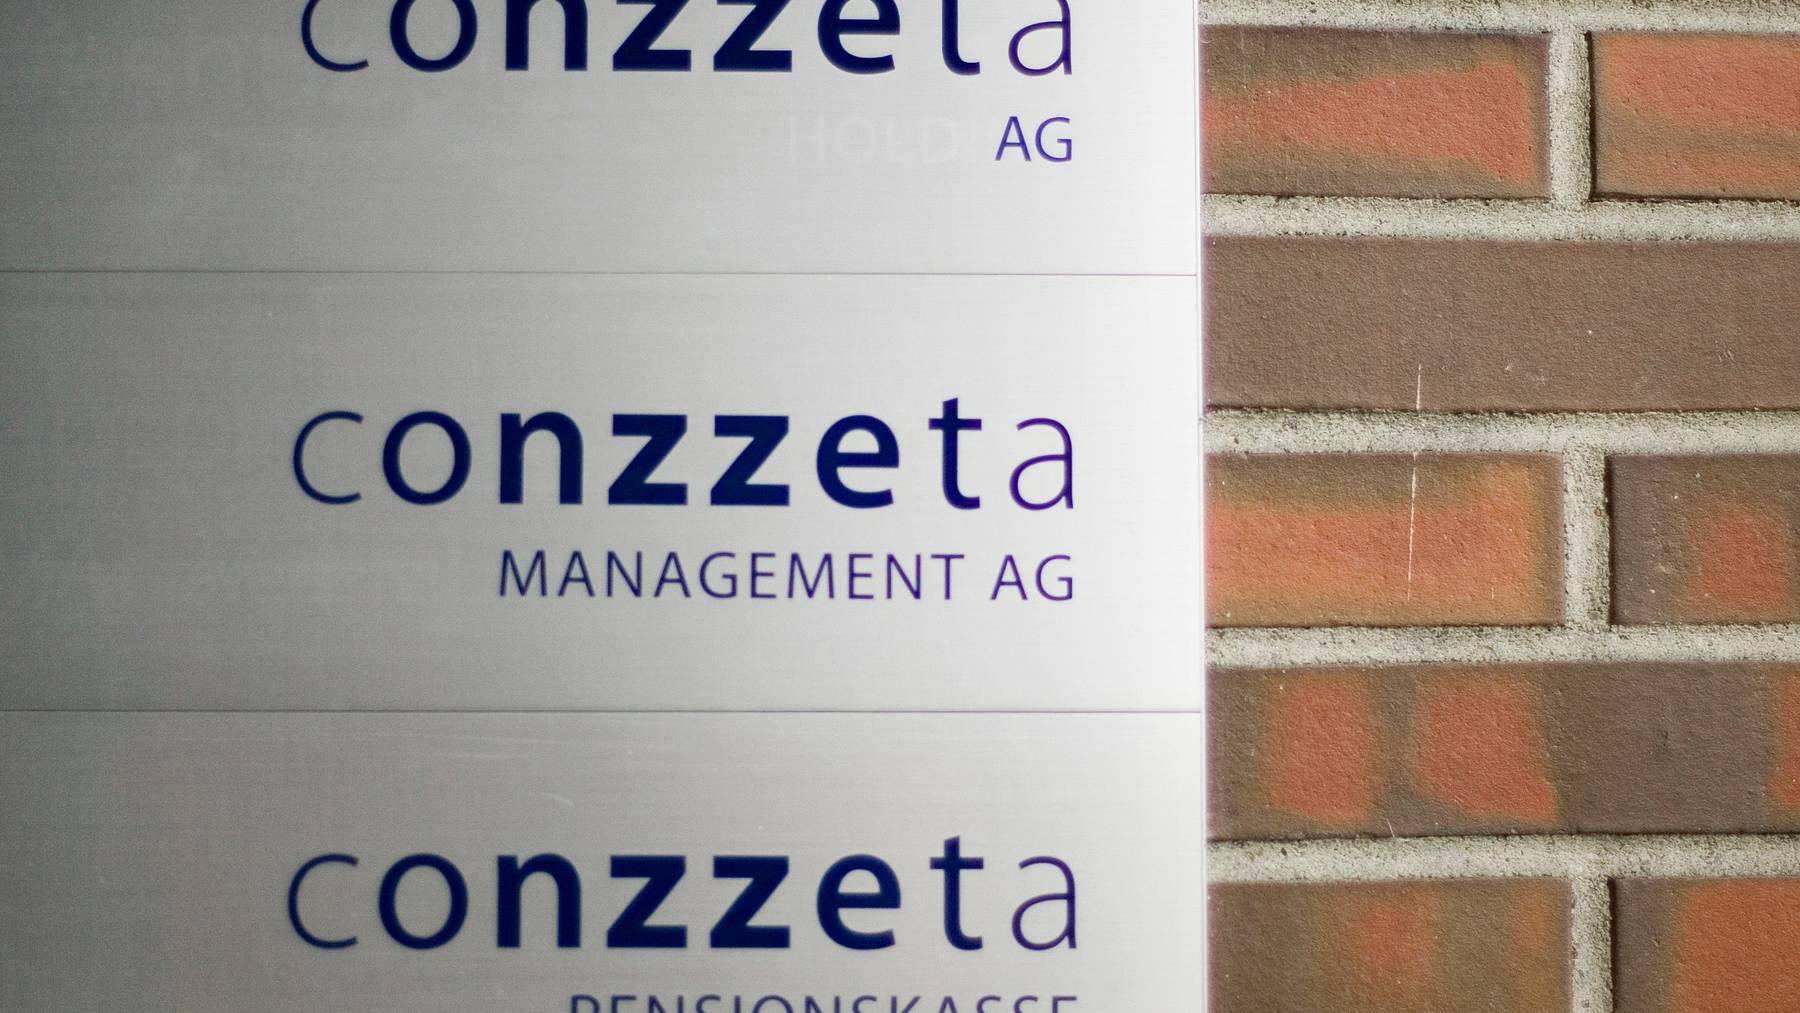 Umsatz und Auftragsvolumen waren bei Conzzeta im letzten Jahr rückläufig.